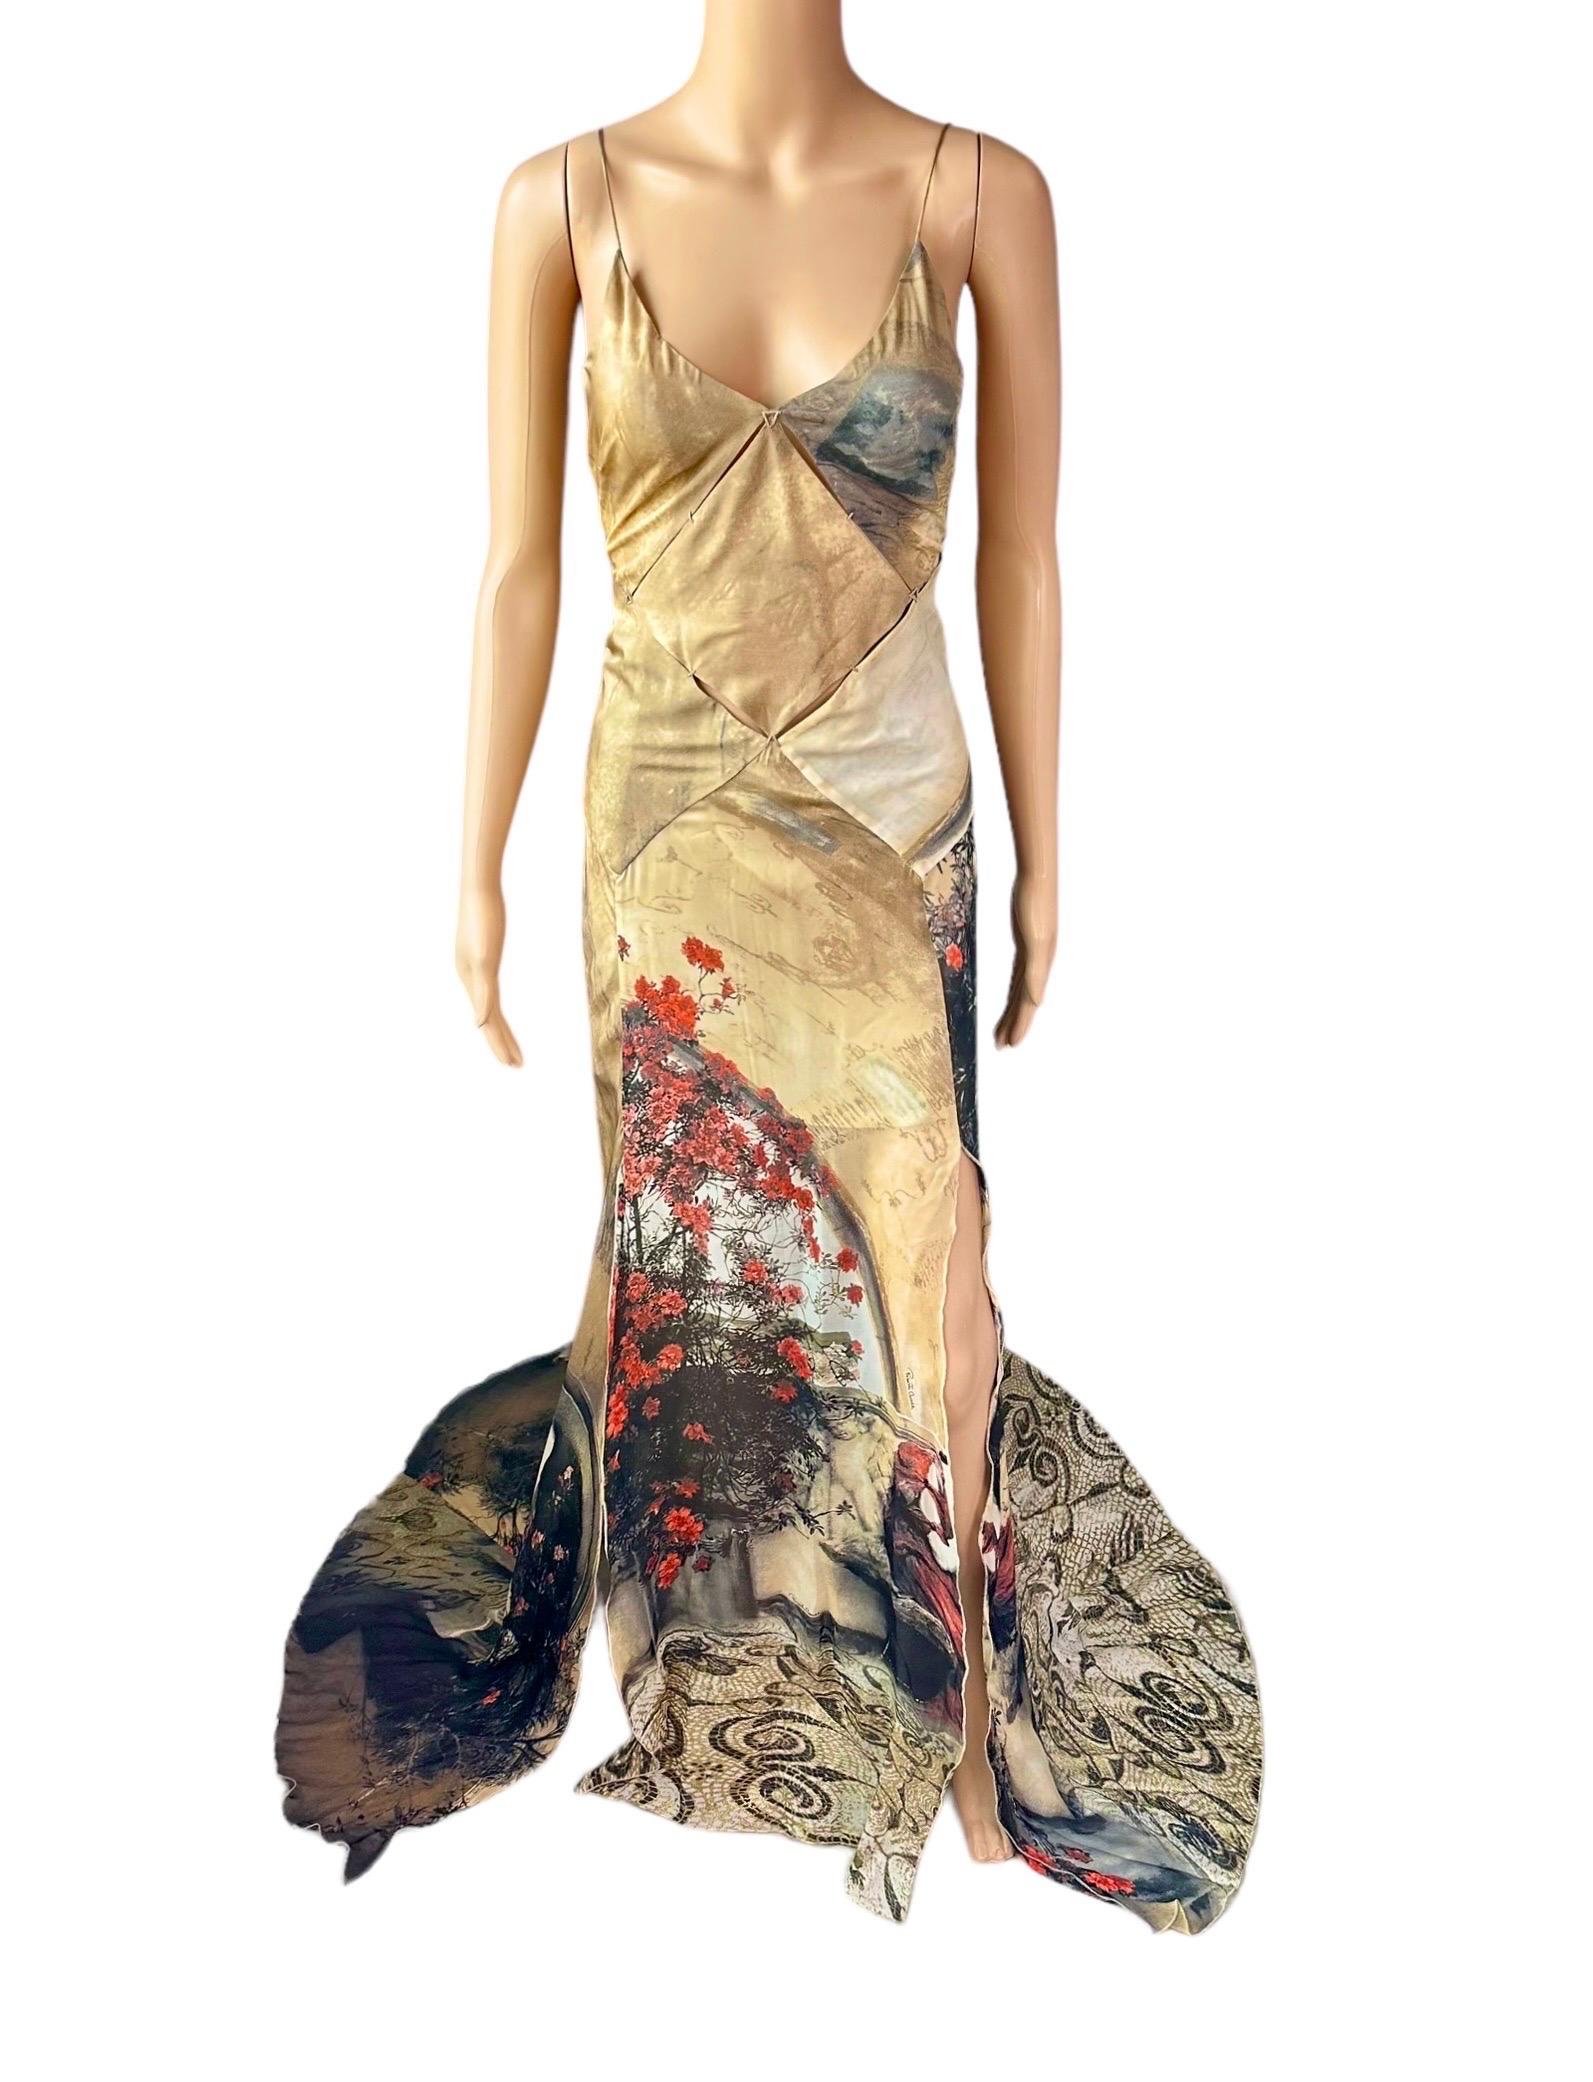 Women's Roberto Cavalli S/S 2004 Runway Cutout High Slit Silk Slip Evening Dress Gown For Sale